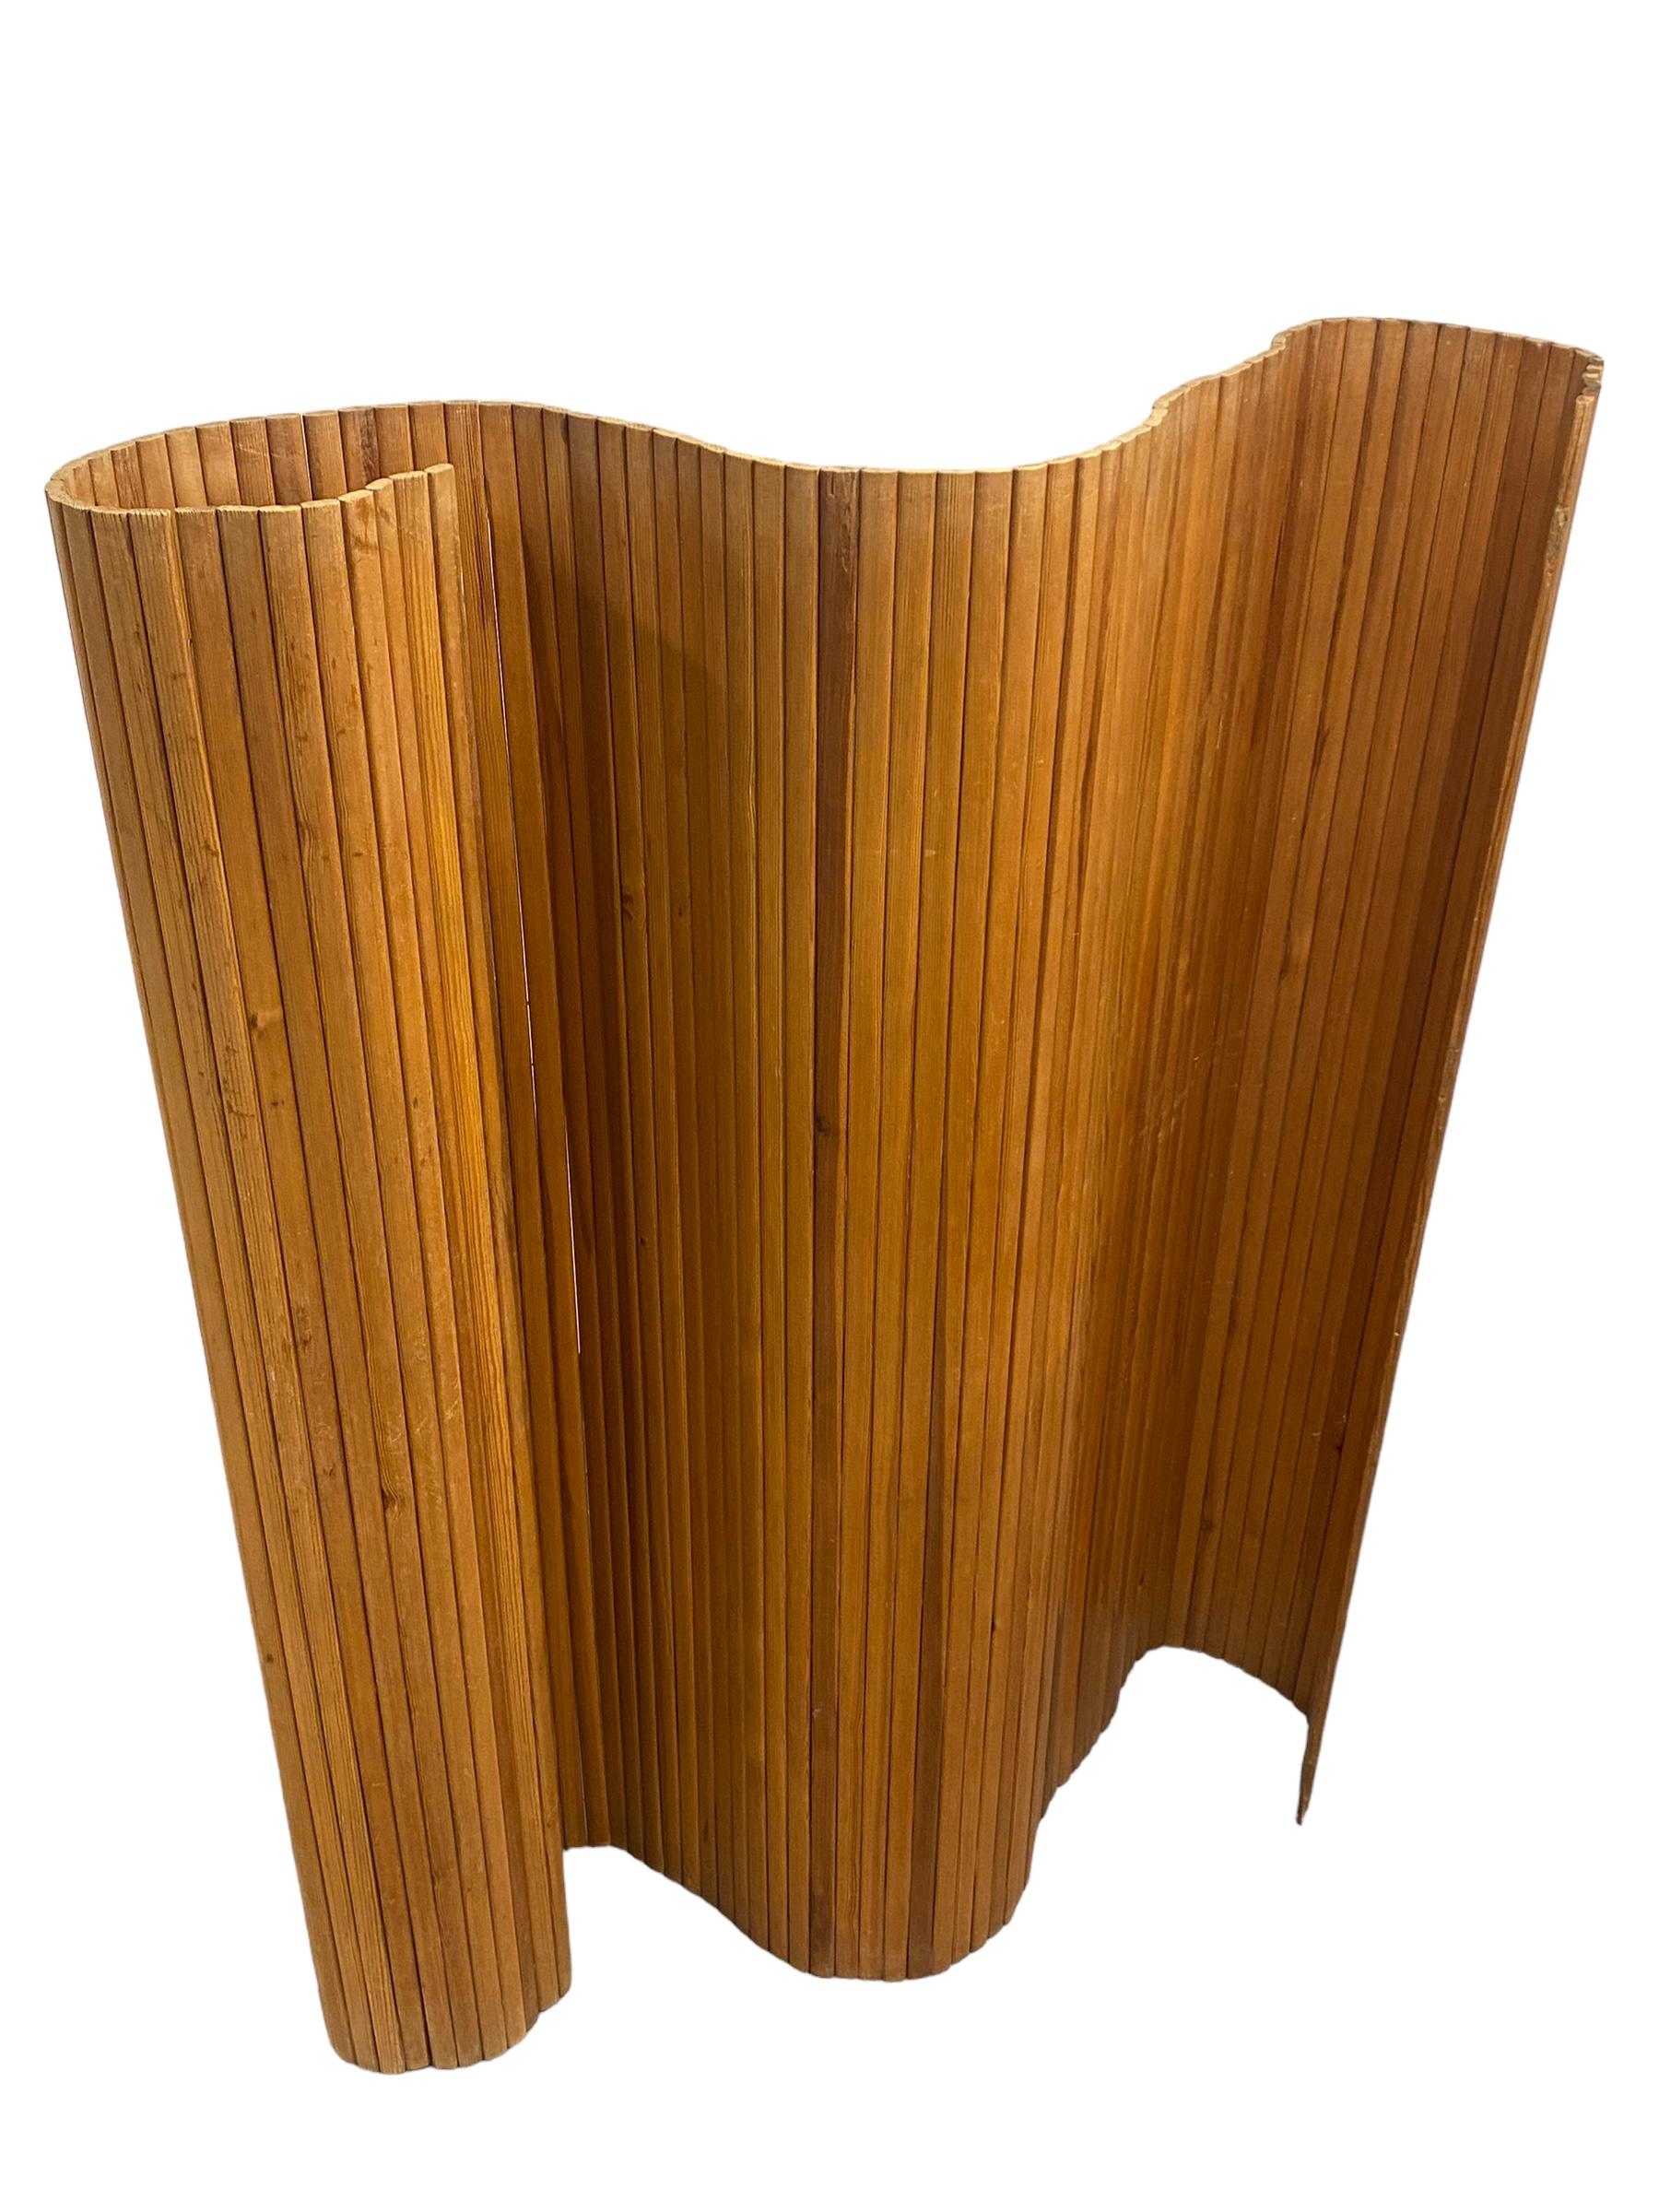 Le mur / séparateur de pièces à lattes 100 d'Alvar Aalto est un élément d'intérieur dynamique assemblé à partir d'étroites lattes verticales en pin. Il peut être enroulé et ouvert en position droite ou dans de nombreuses positions incurvées. D'une